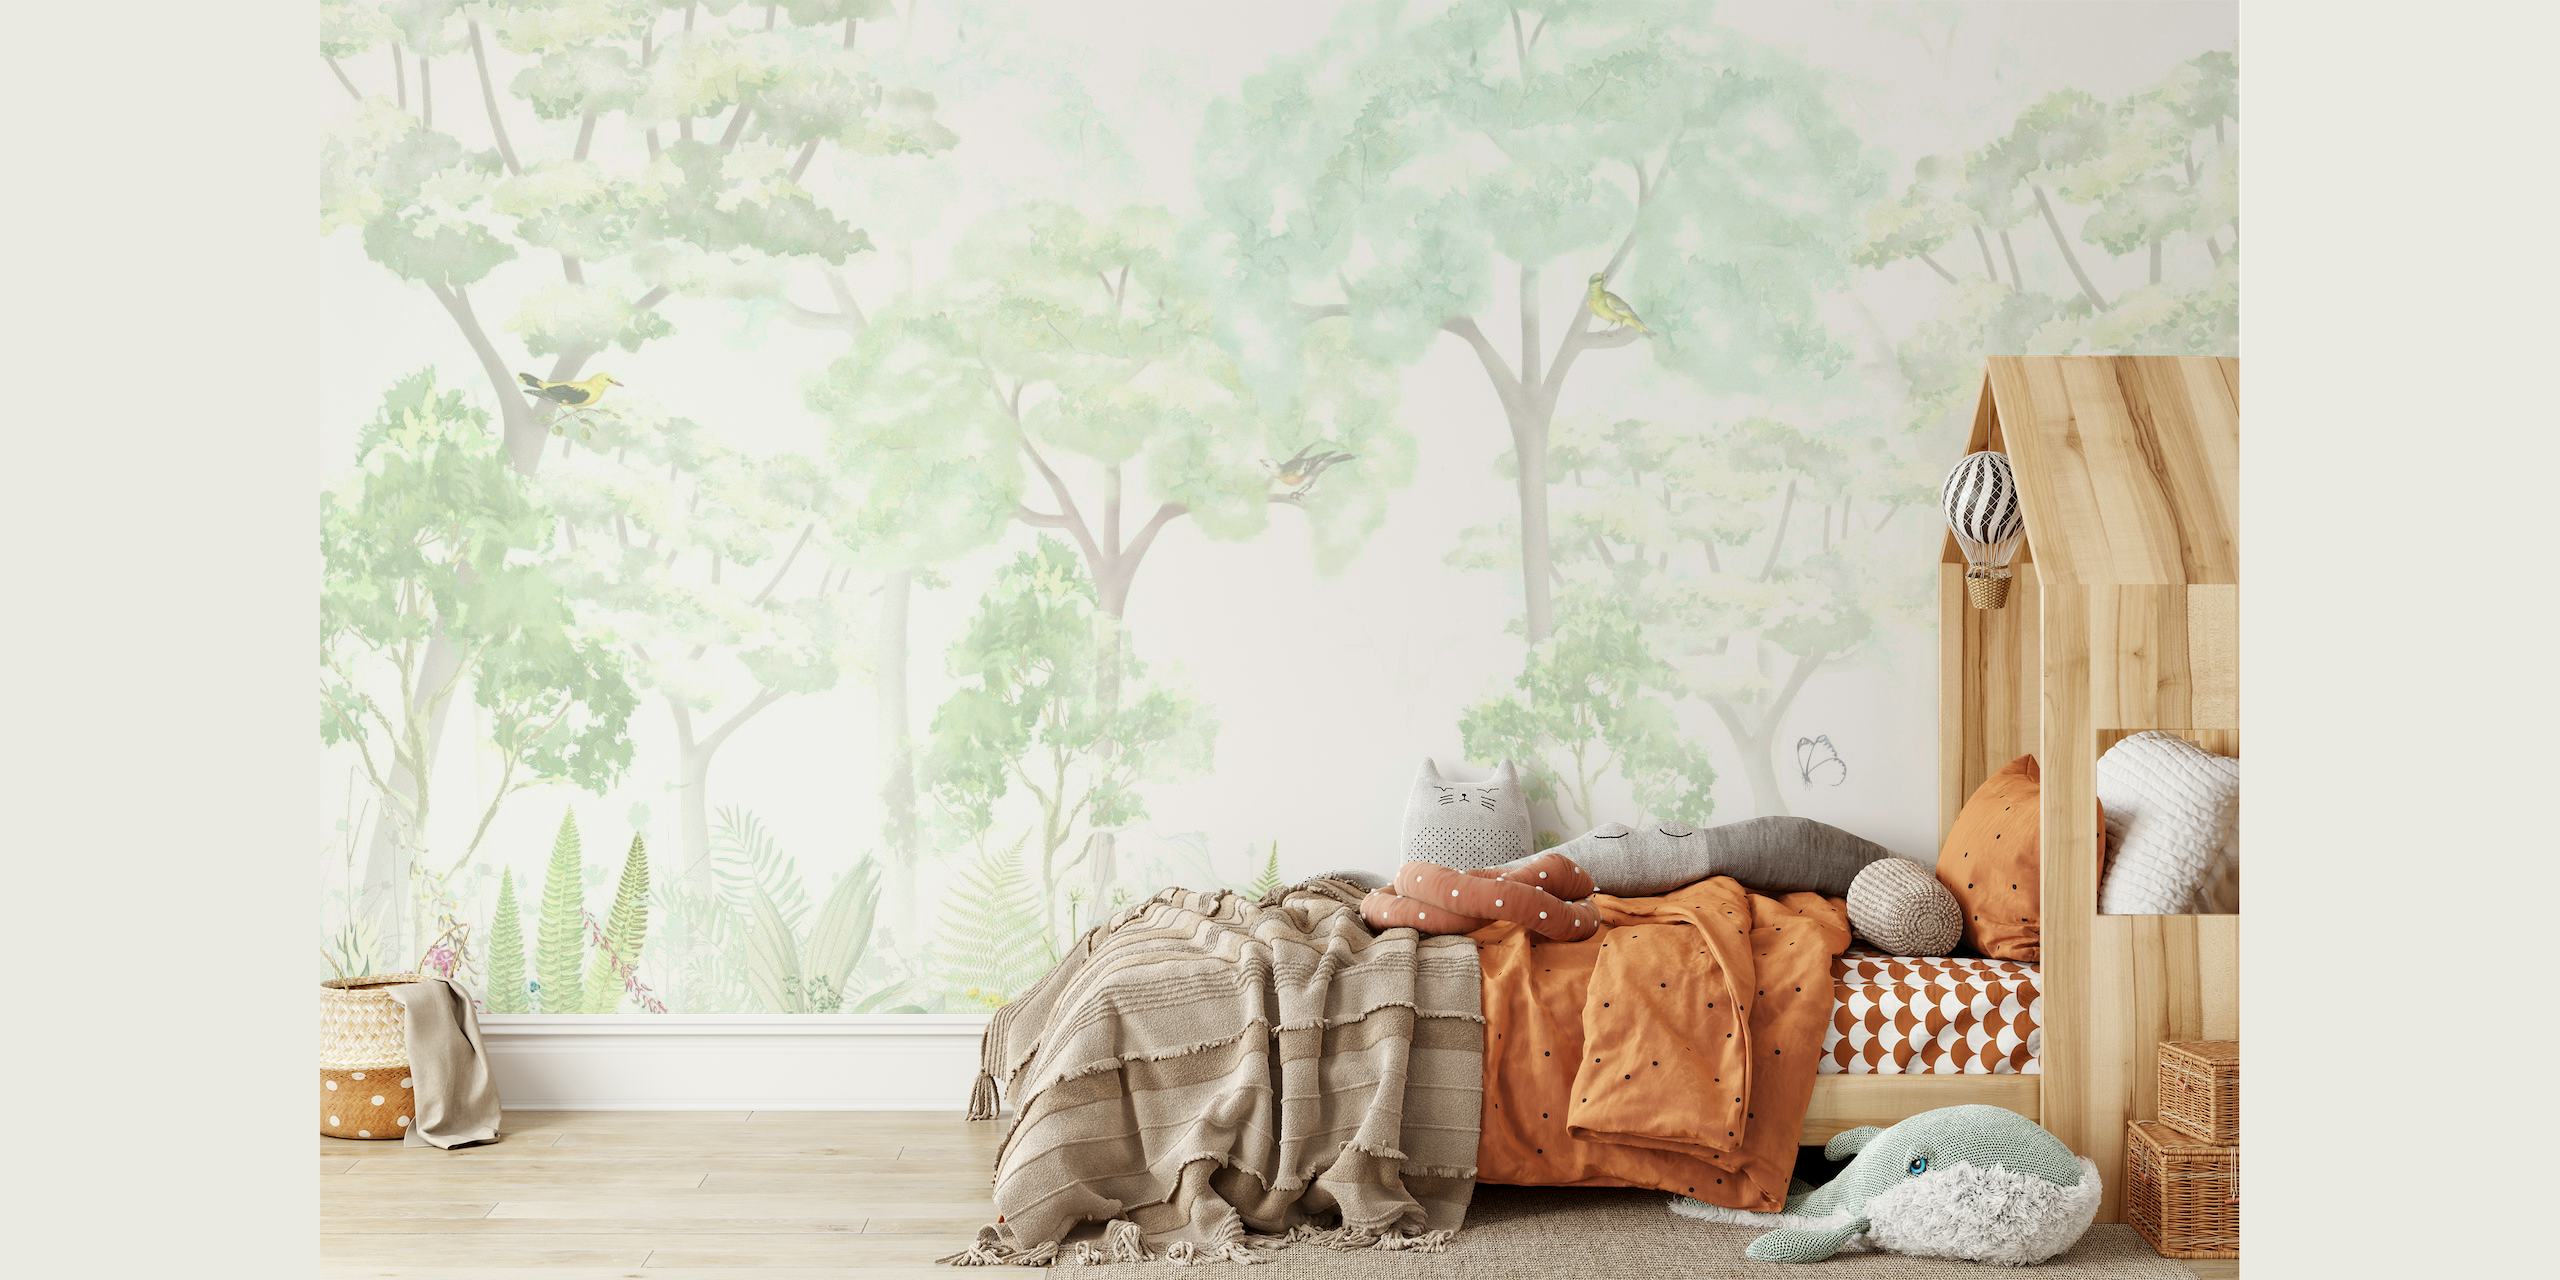 Skurriles Fantasiewald-Wandbild mit sanften Grüntönen und ätherischen Bäumen